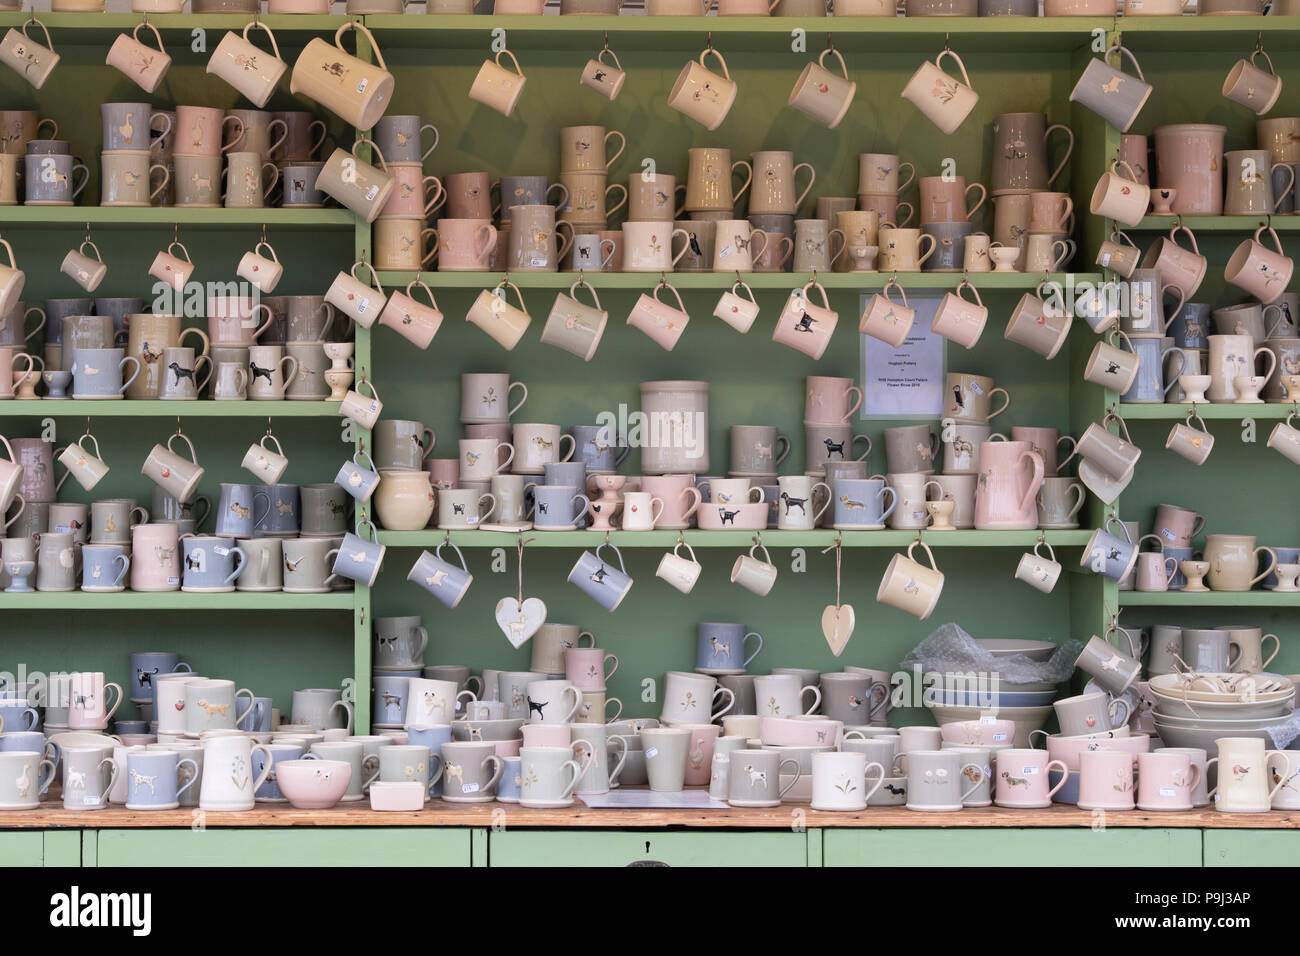 Pottery Blog - Bentham Pottery